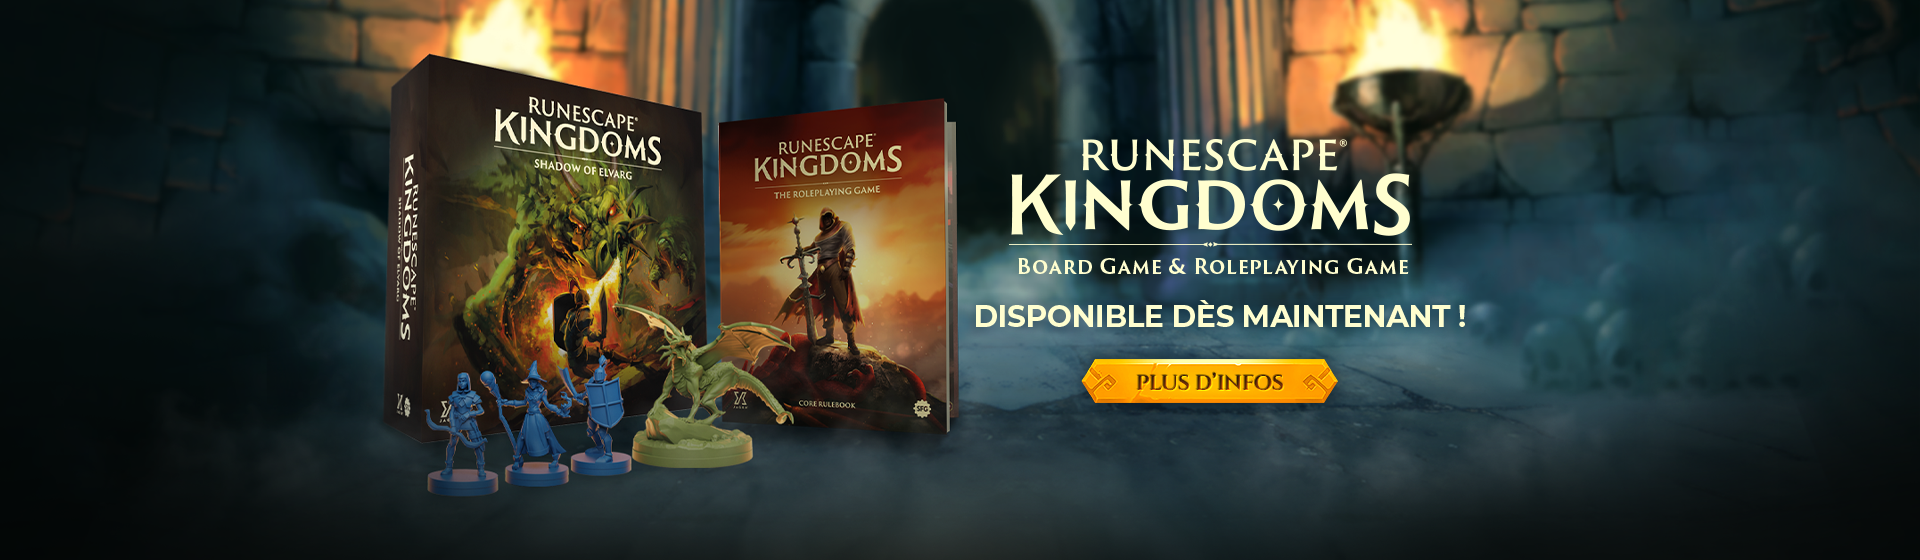 RuneScape Kingdoms - Disponible dès maintenant!